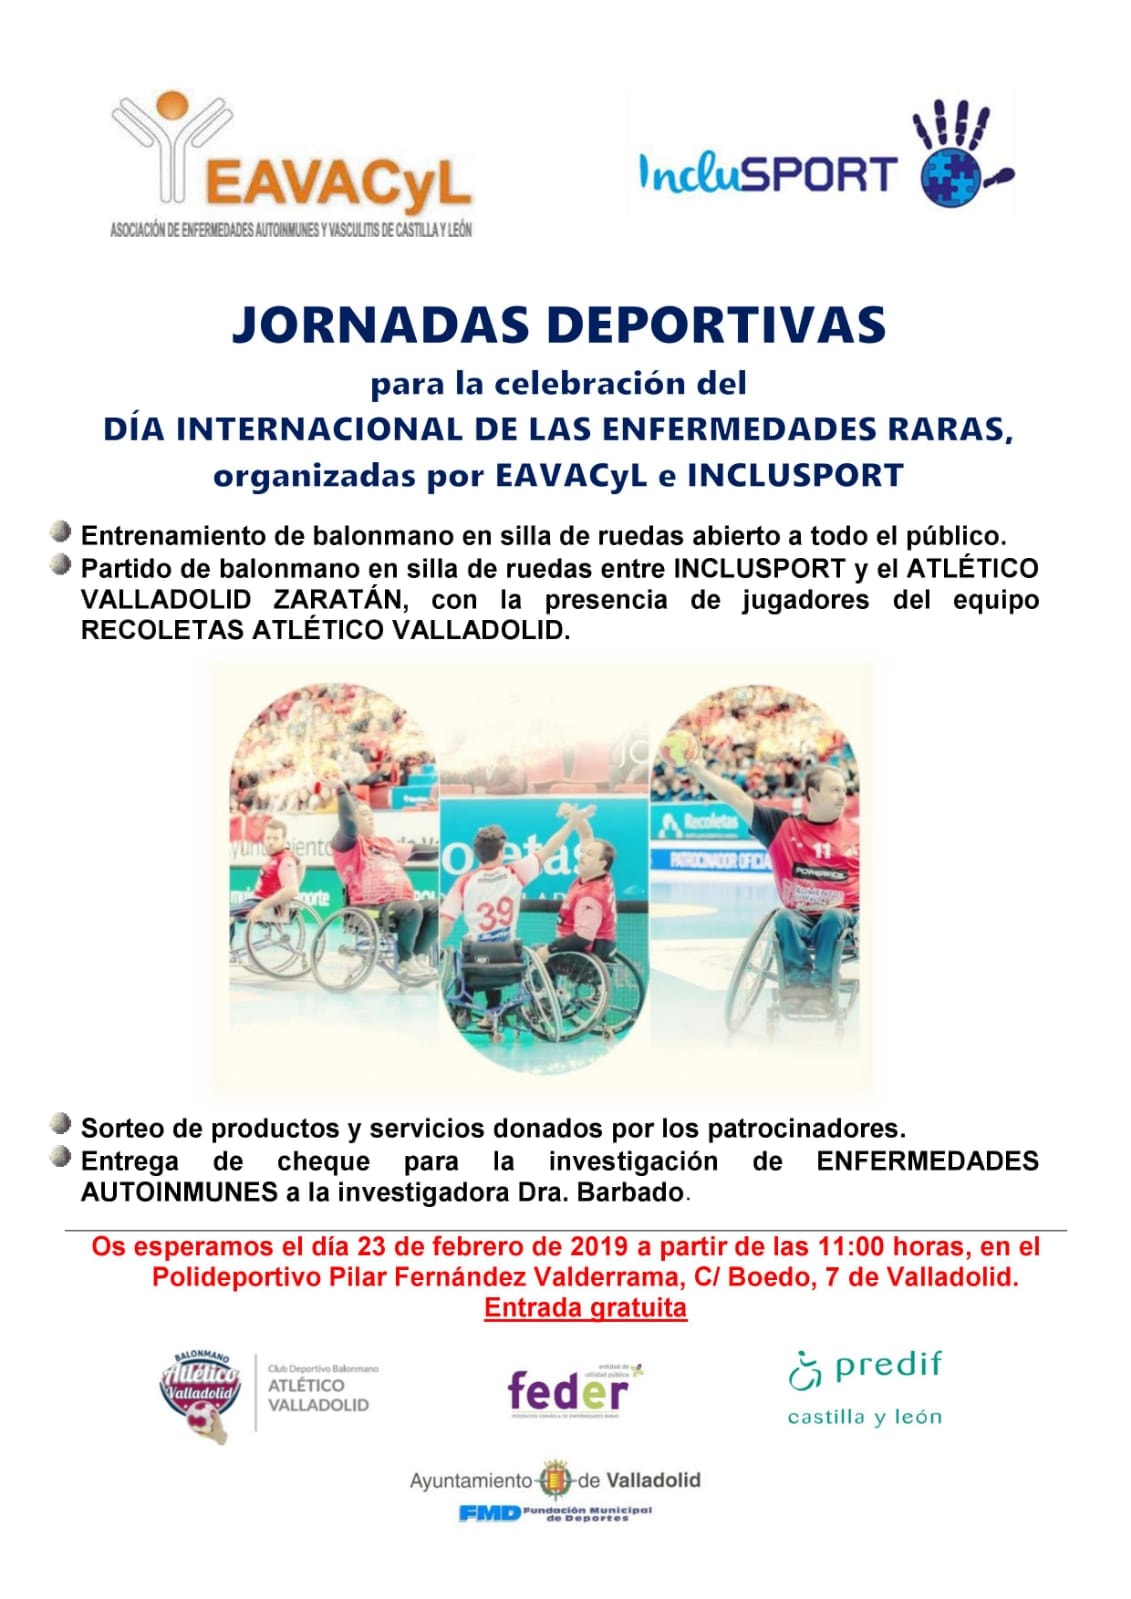 El Recoletas Atlético Valladolid colabora con la celebración del Día Internacional de las Enfermedades Raras | Galería 1 / 1